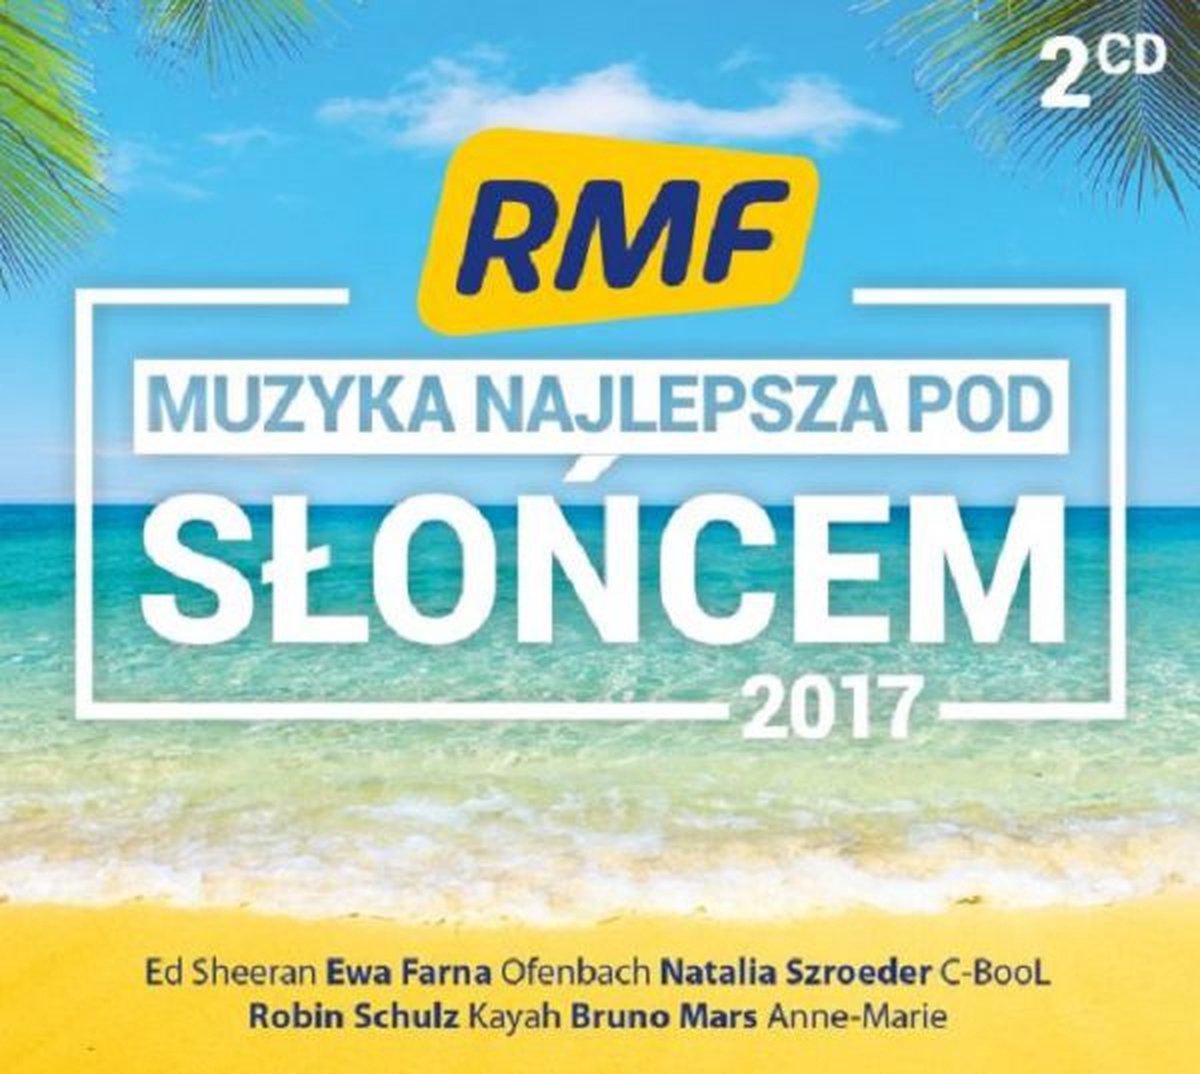 RMF FM - Muzyka Najlepsza Pod Słońcem 2017 [2CD] - Ofenbach